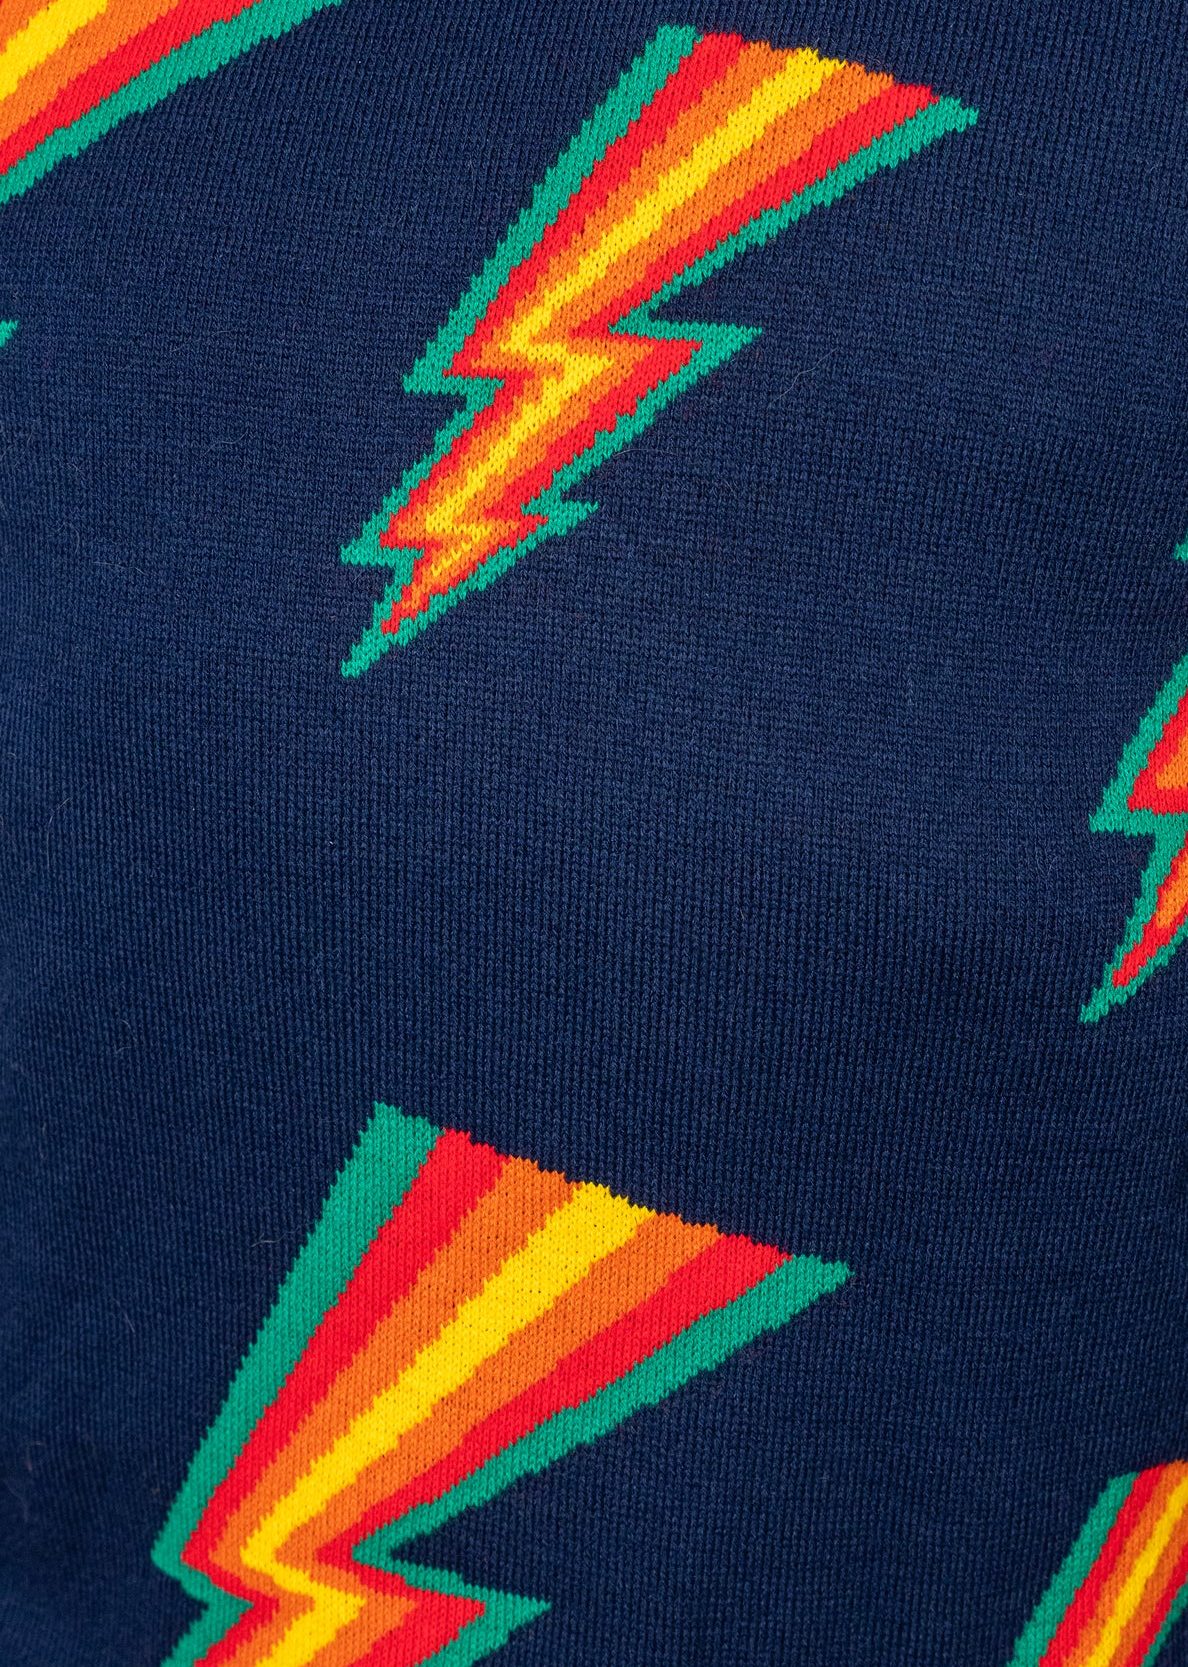 Run &amp; Fly - Rainbow Lightning Bolt Jumper